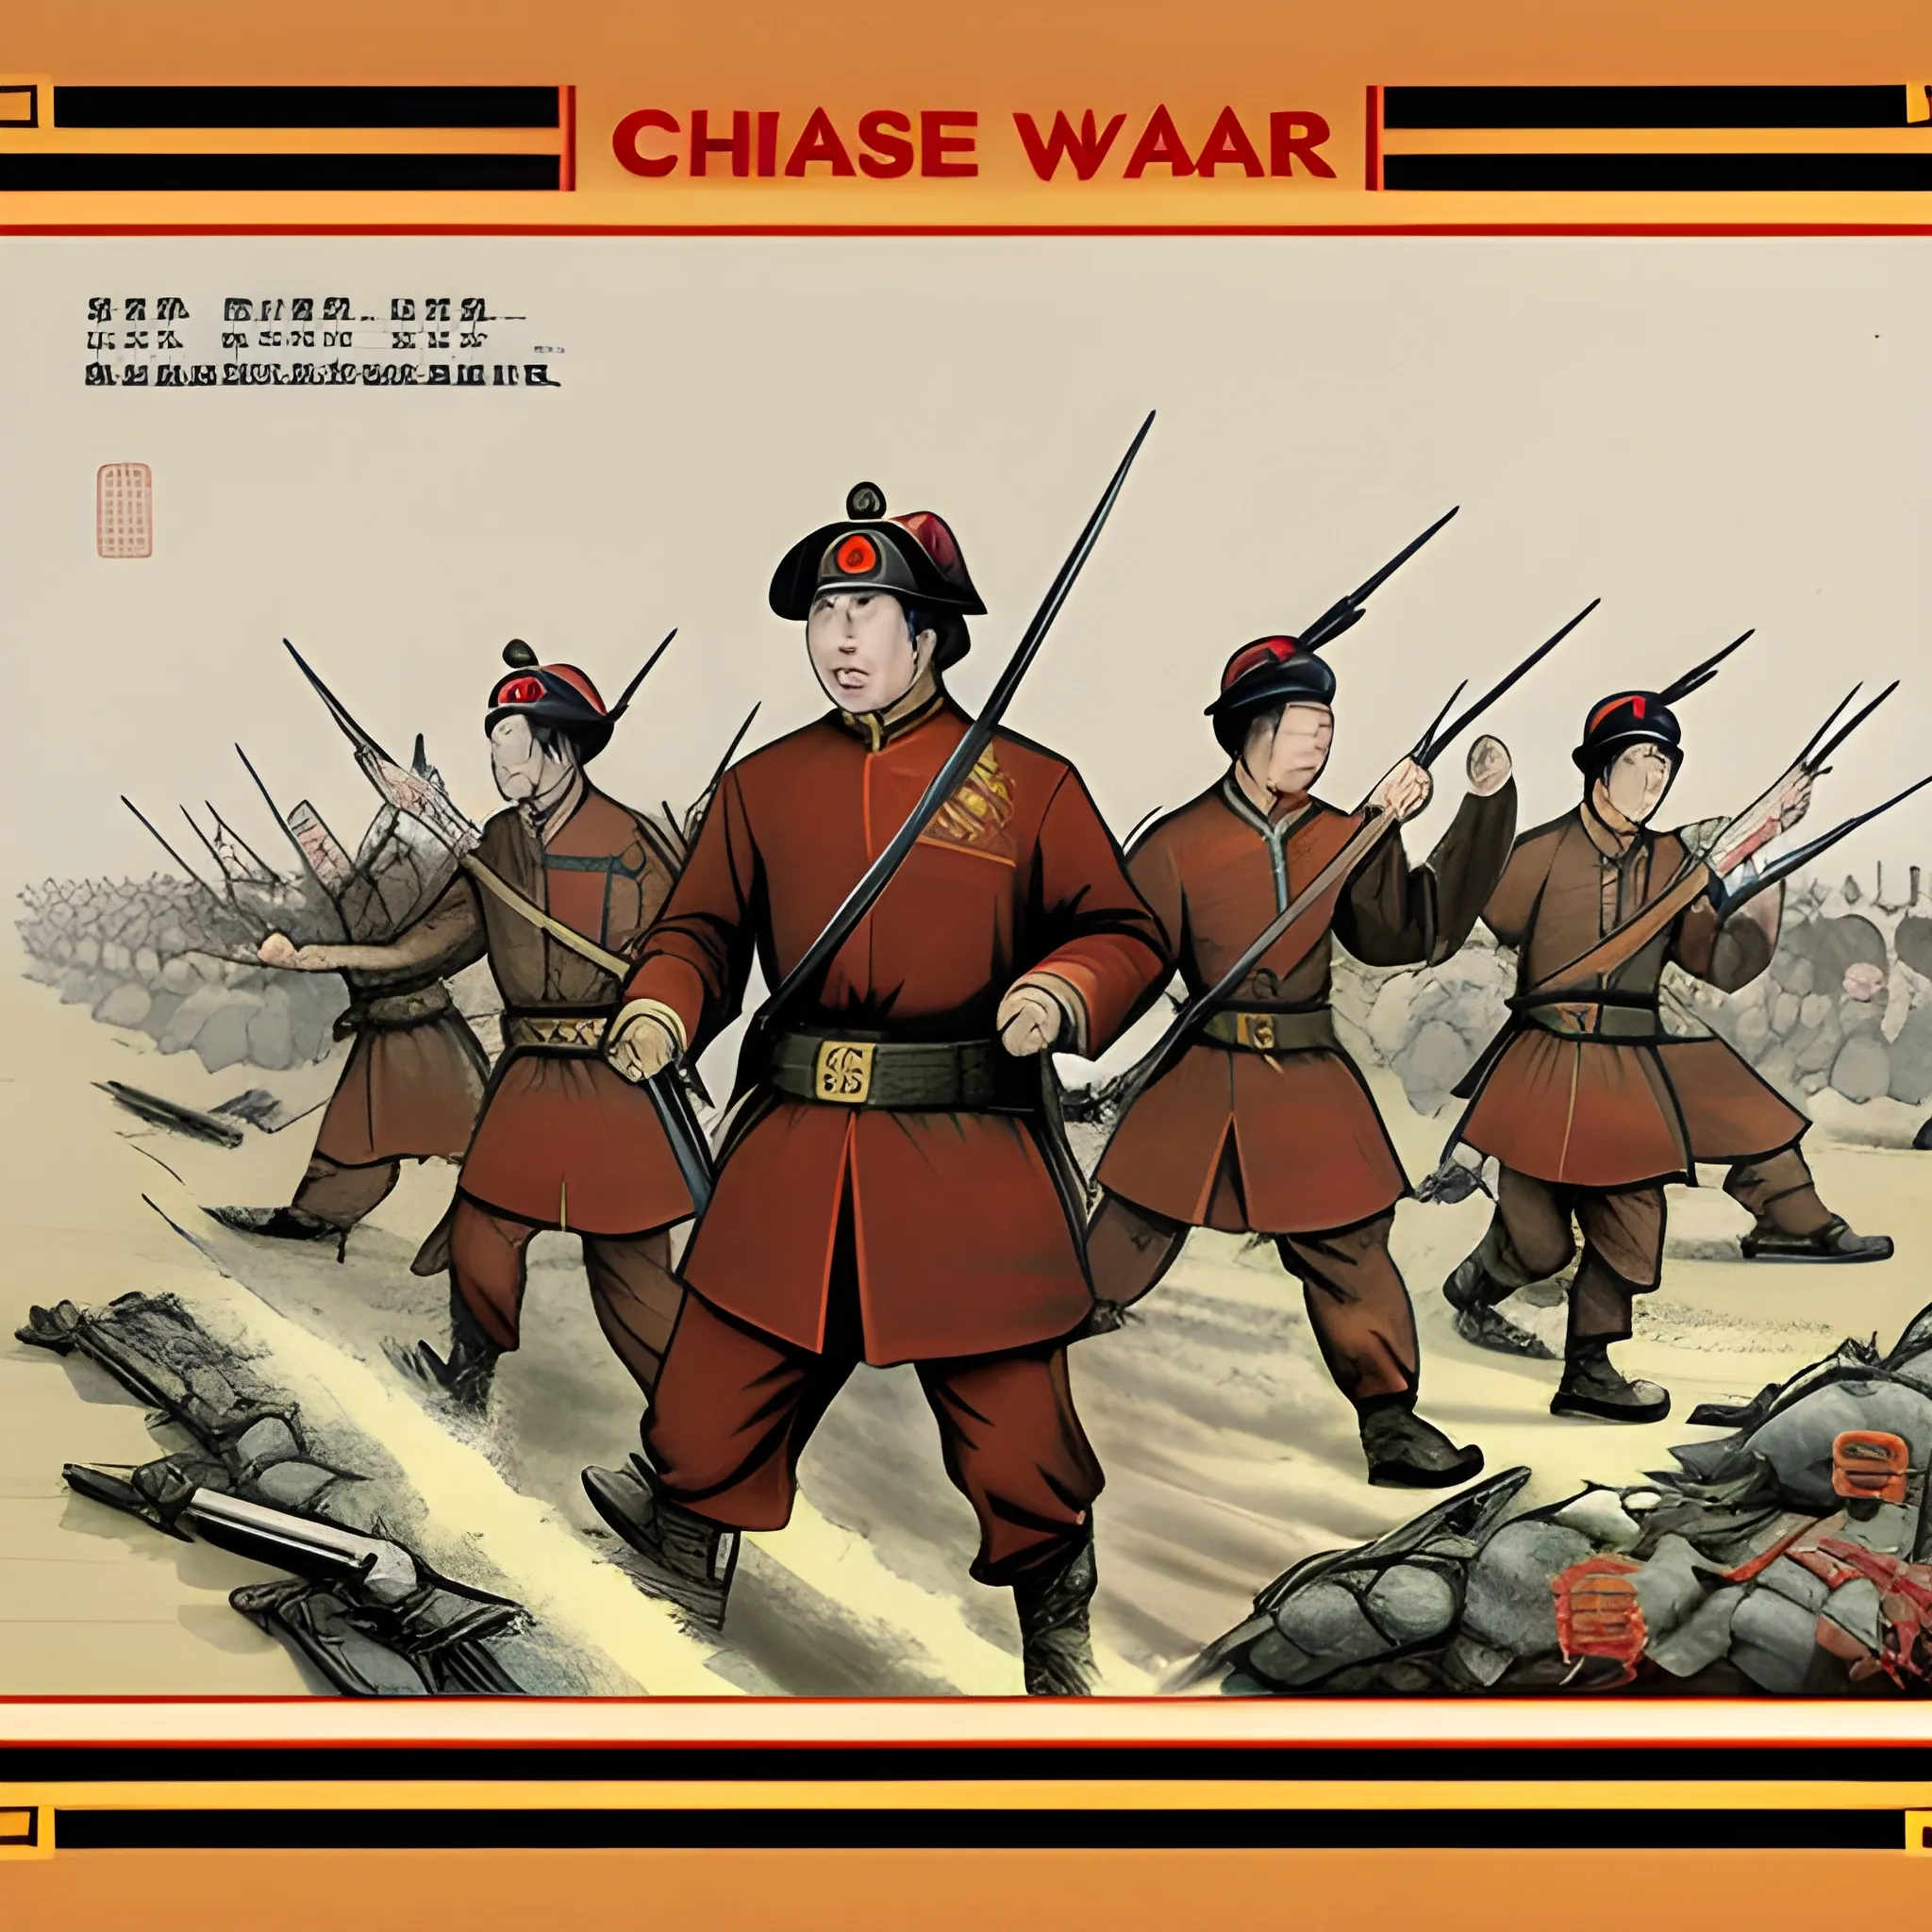 Chinese war
